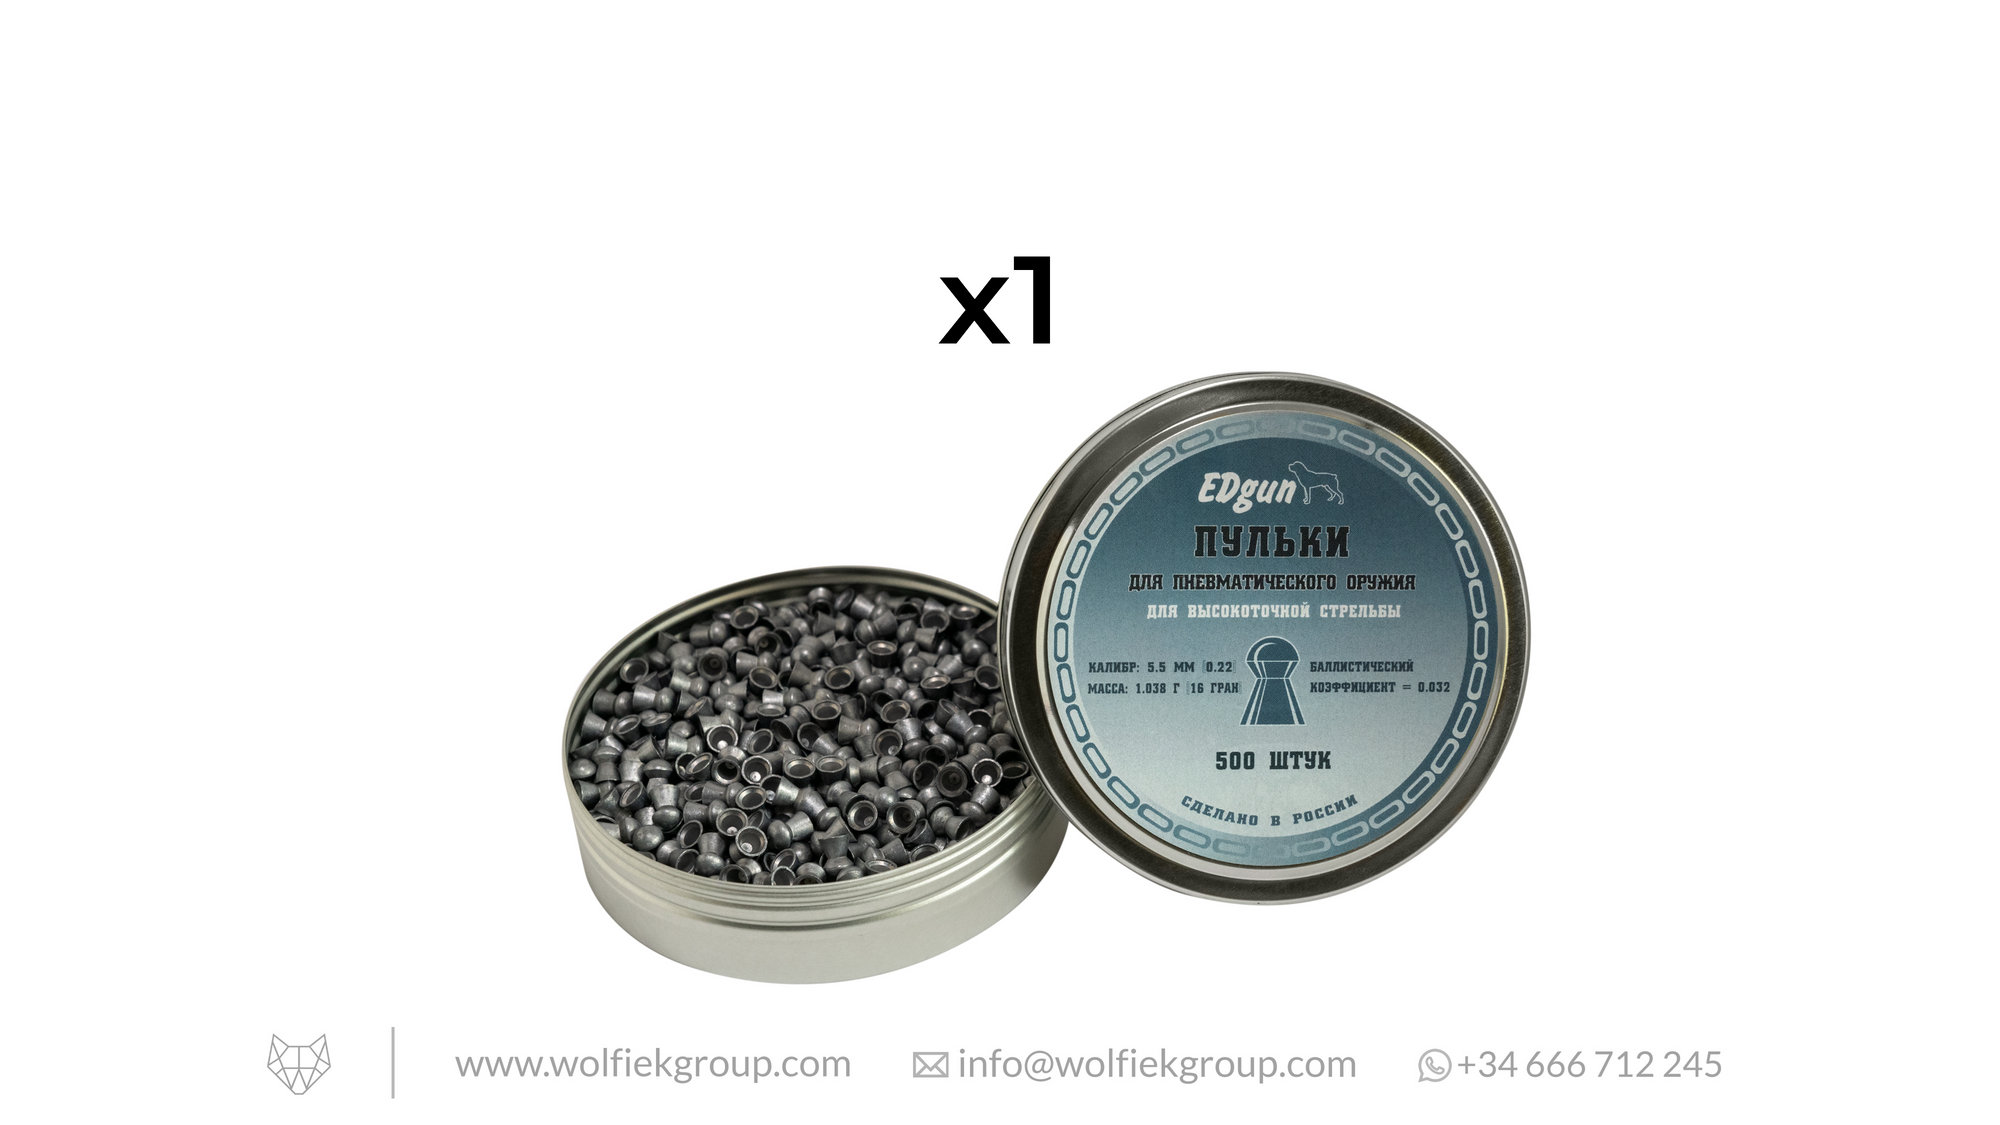 Balines EDgun Premium Exact  · Caliber .22 (5,52 mm) · Weight 1,03g (15,89gr)